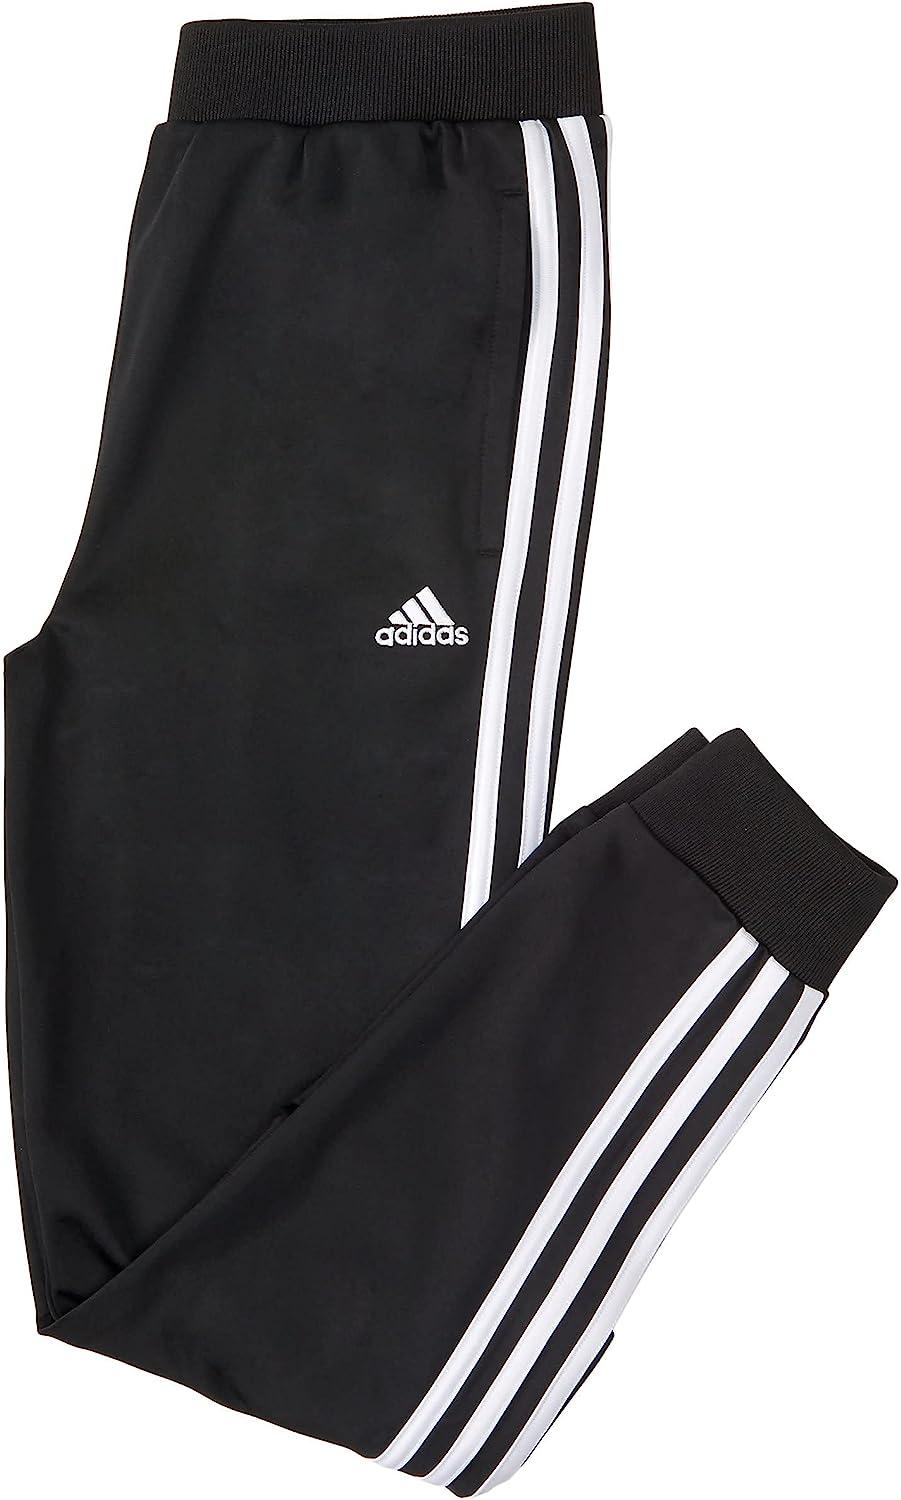 Adidas / Originals Men's Sport Fleece Pants